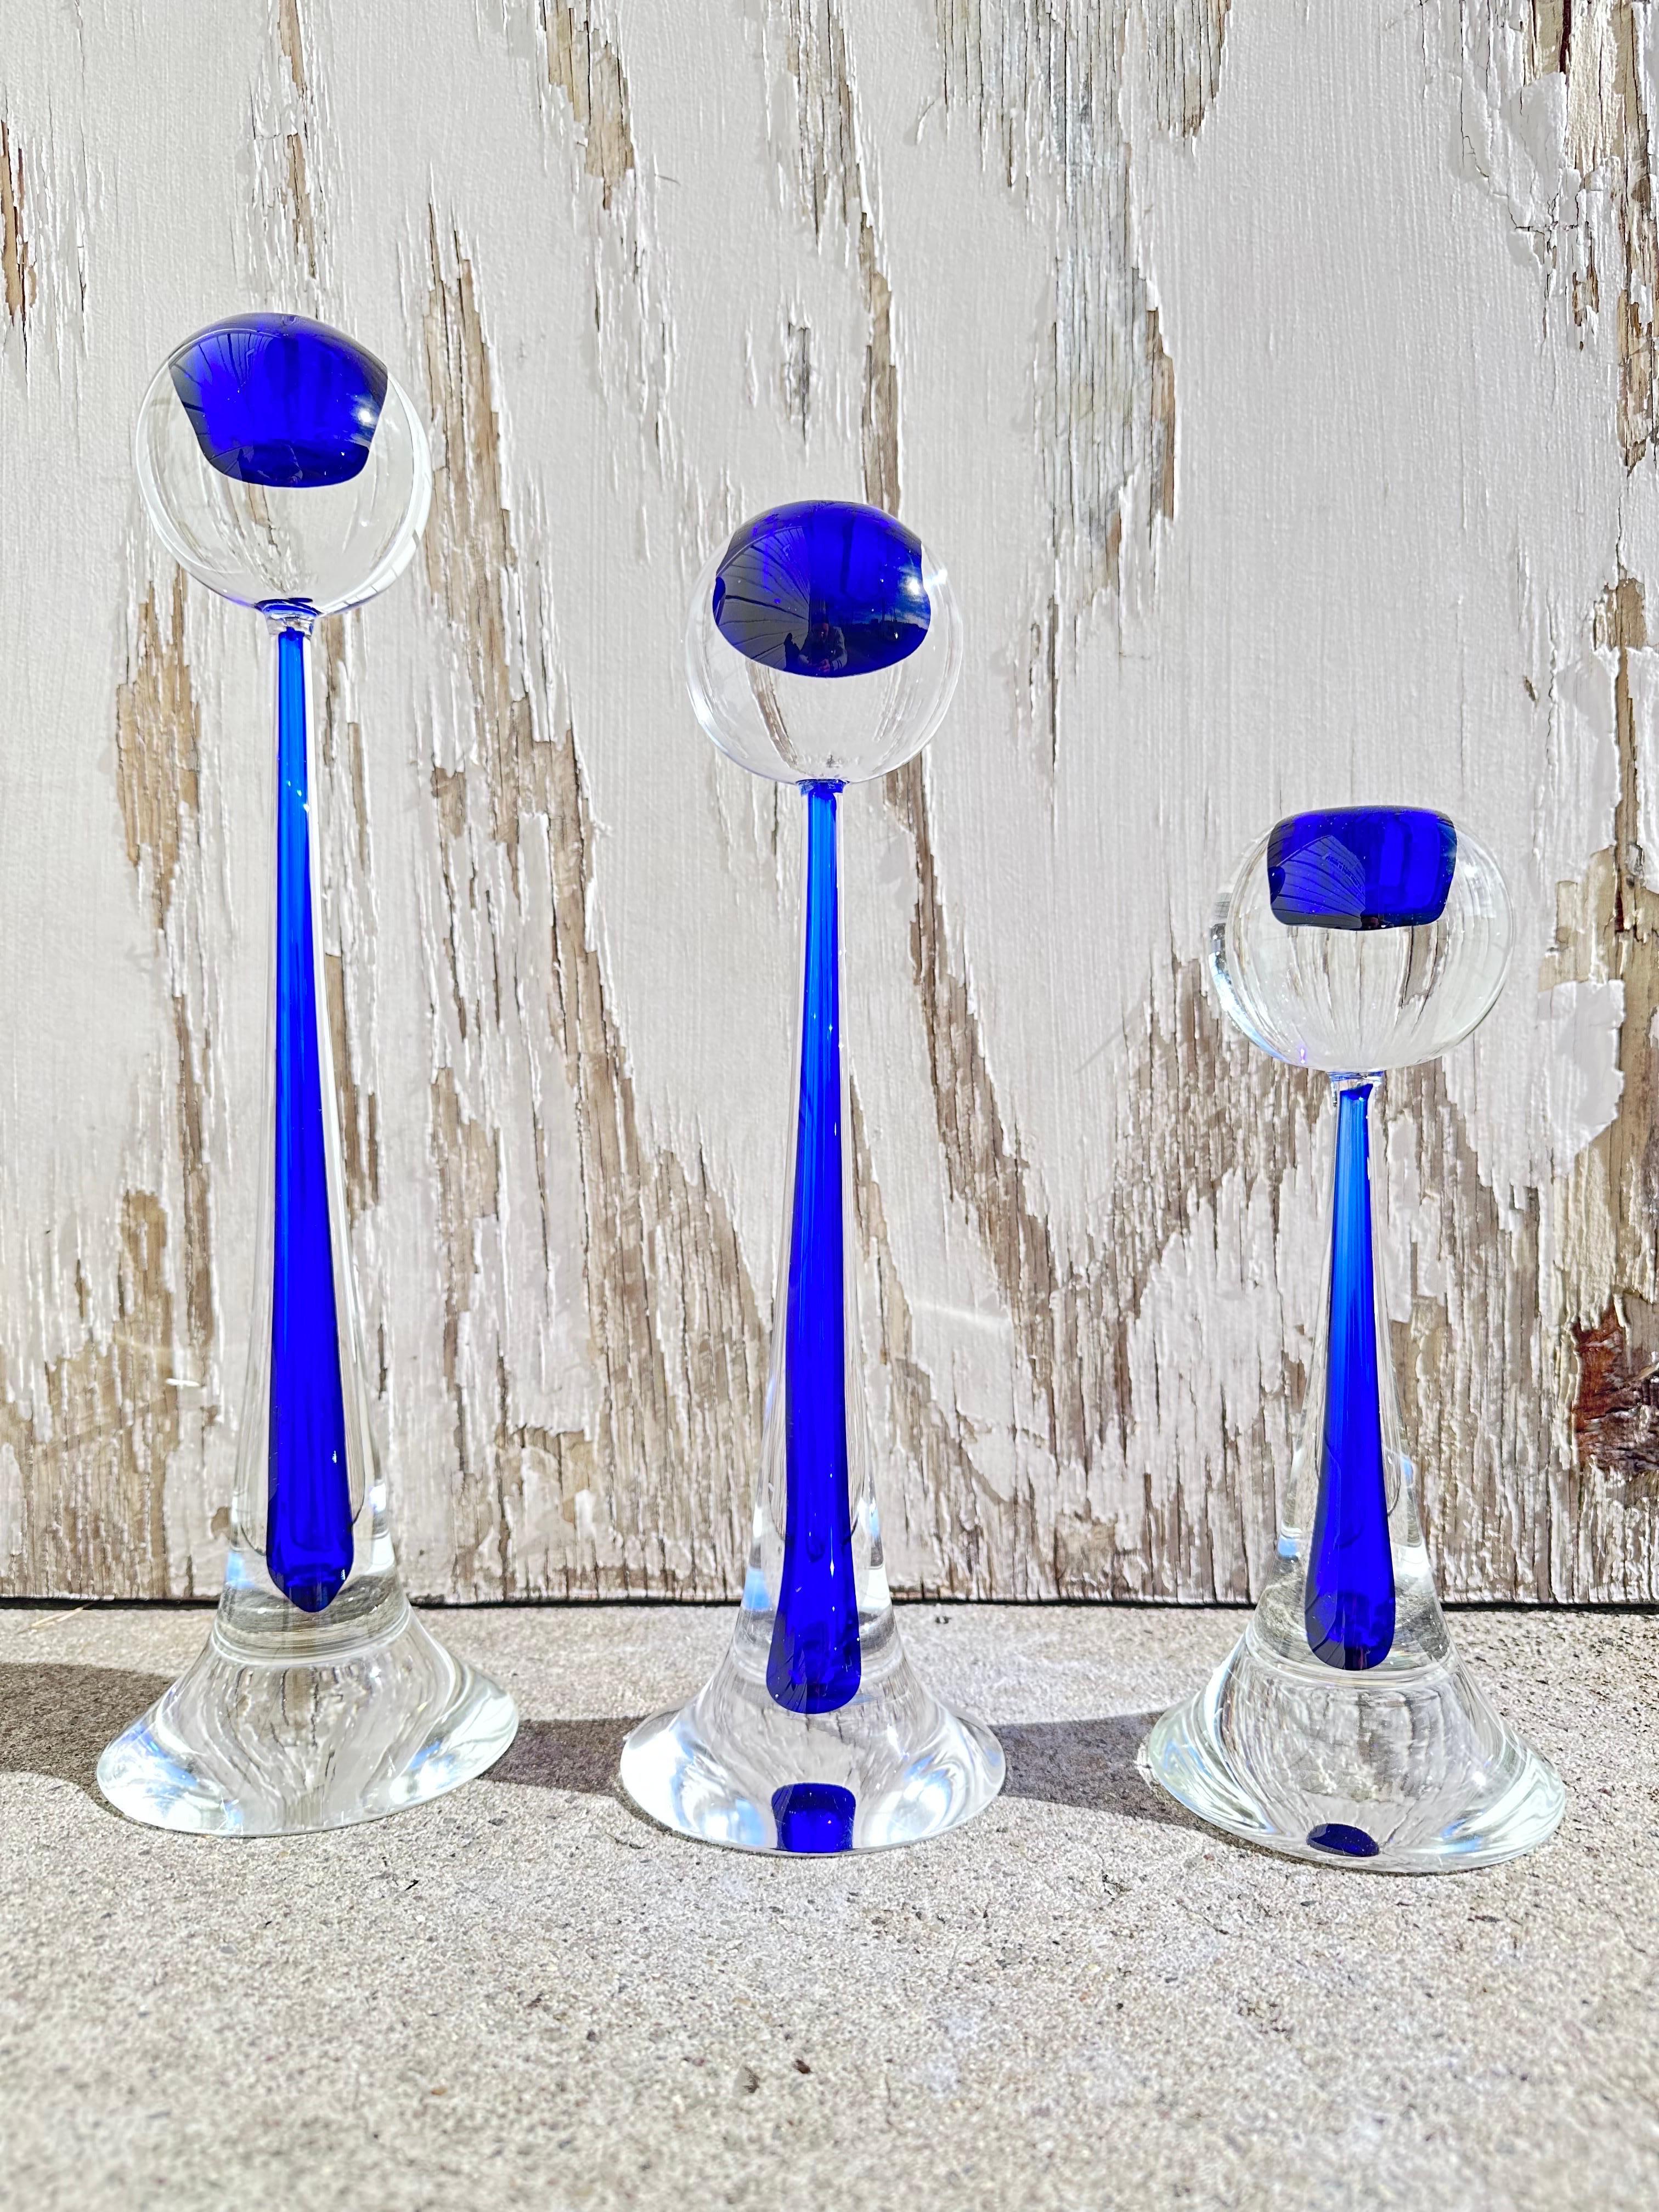 Eine Reihe von drei atemberaubenden Mitte des Jahrhunderts Modernist mundgeblasenem Murano-Glas Kerzenständer von Cenedese unterzeichnet. Diese Kerzenhalter sind aus mundgeblasenem Murano-Glas gefertigt und haben ein spitz zulaufendes,